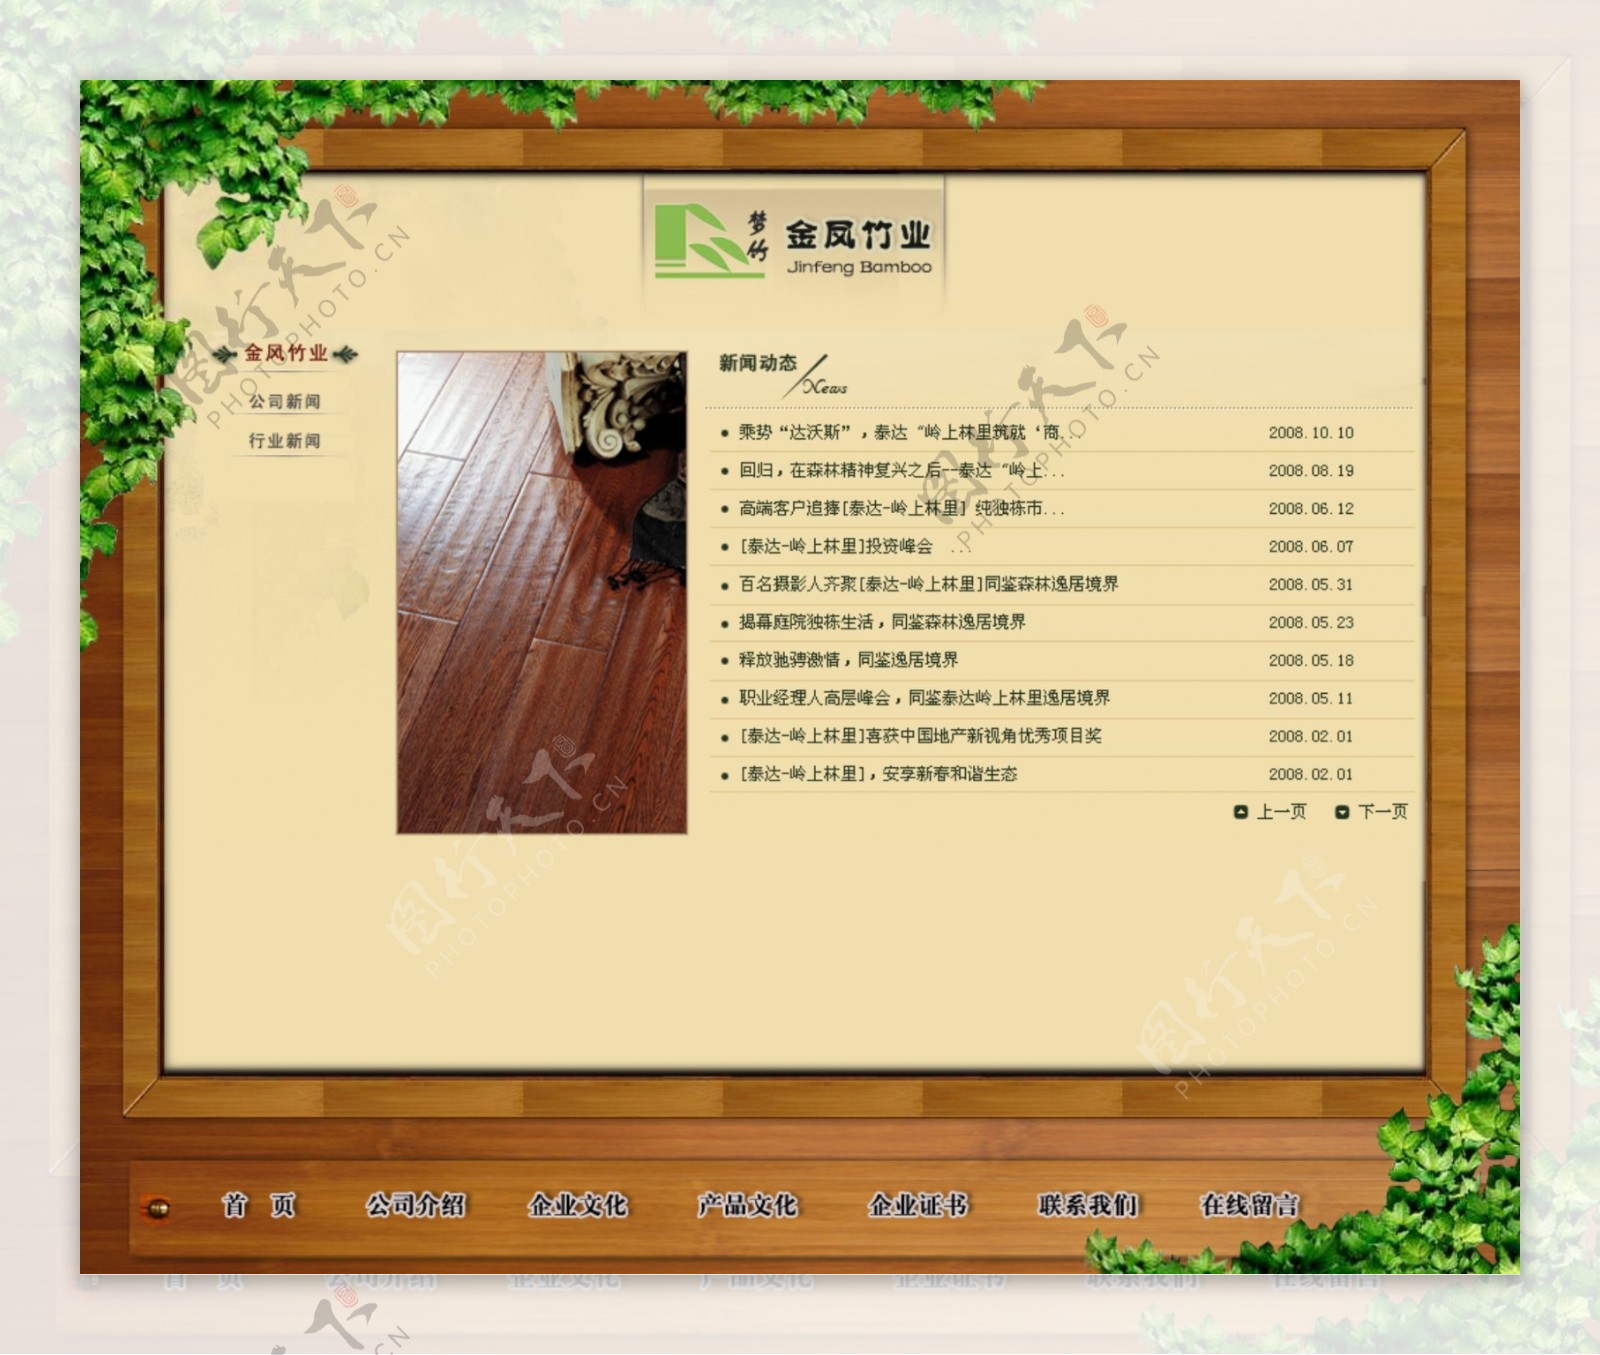 竹业地板公司网页模板